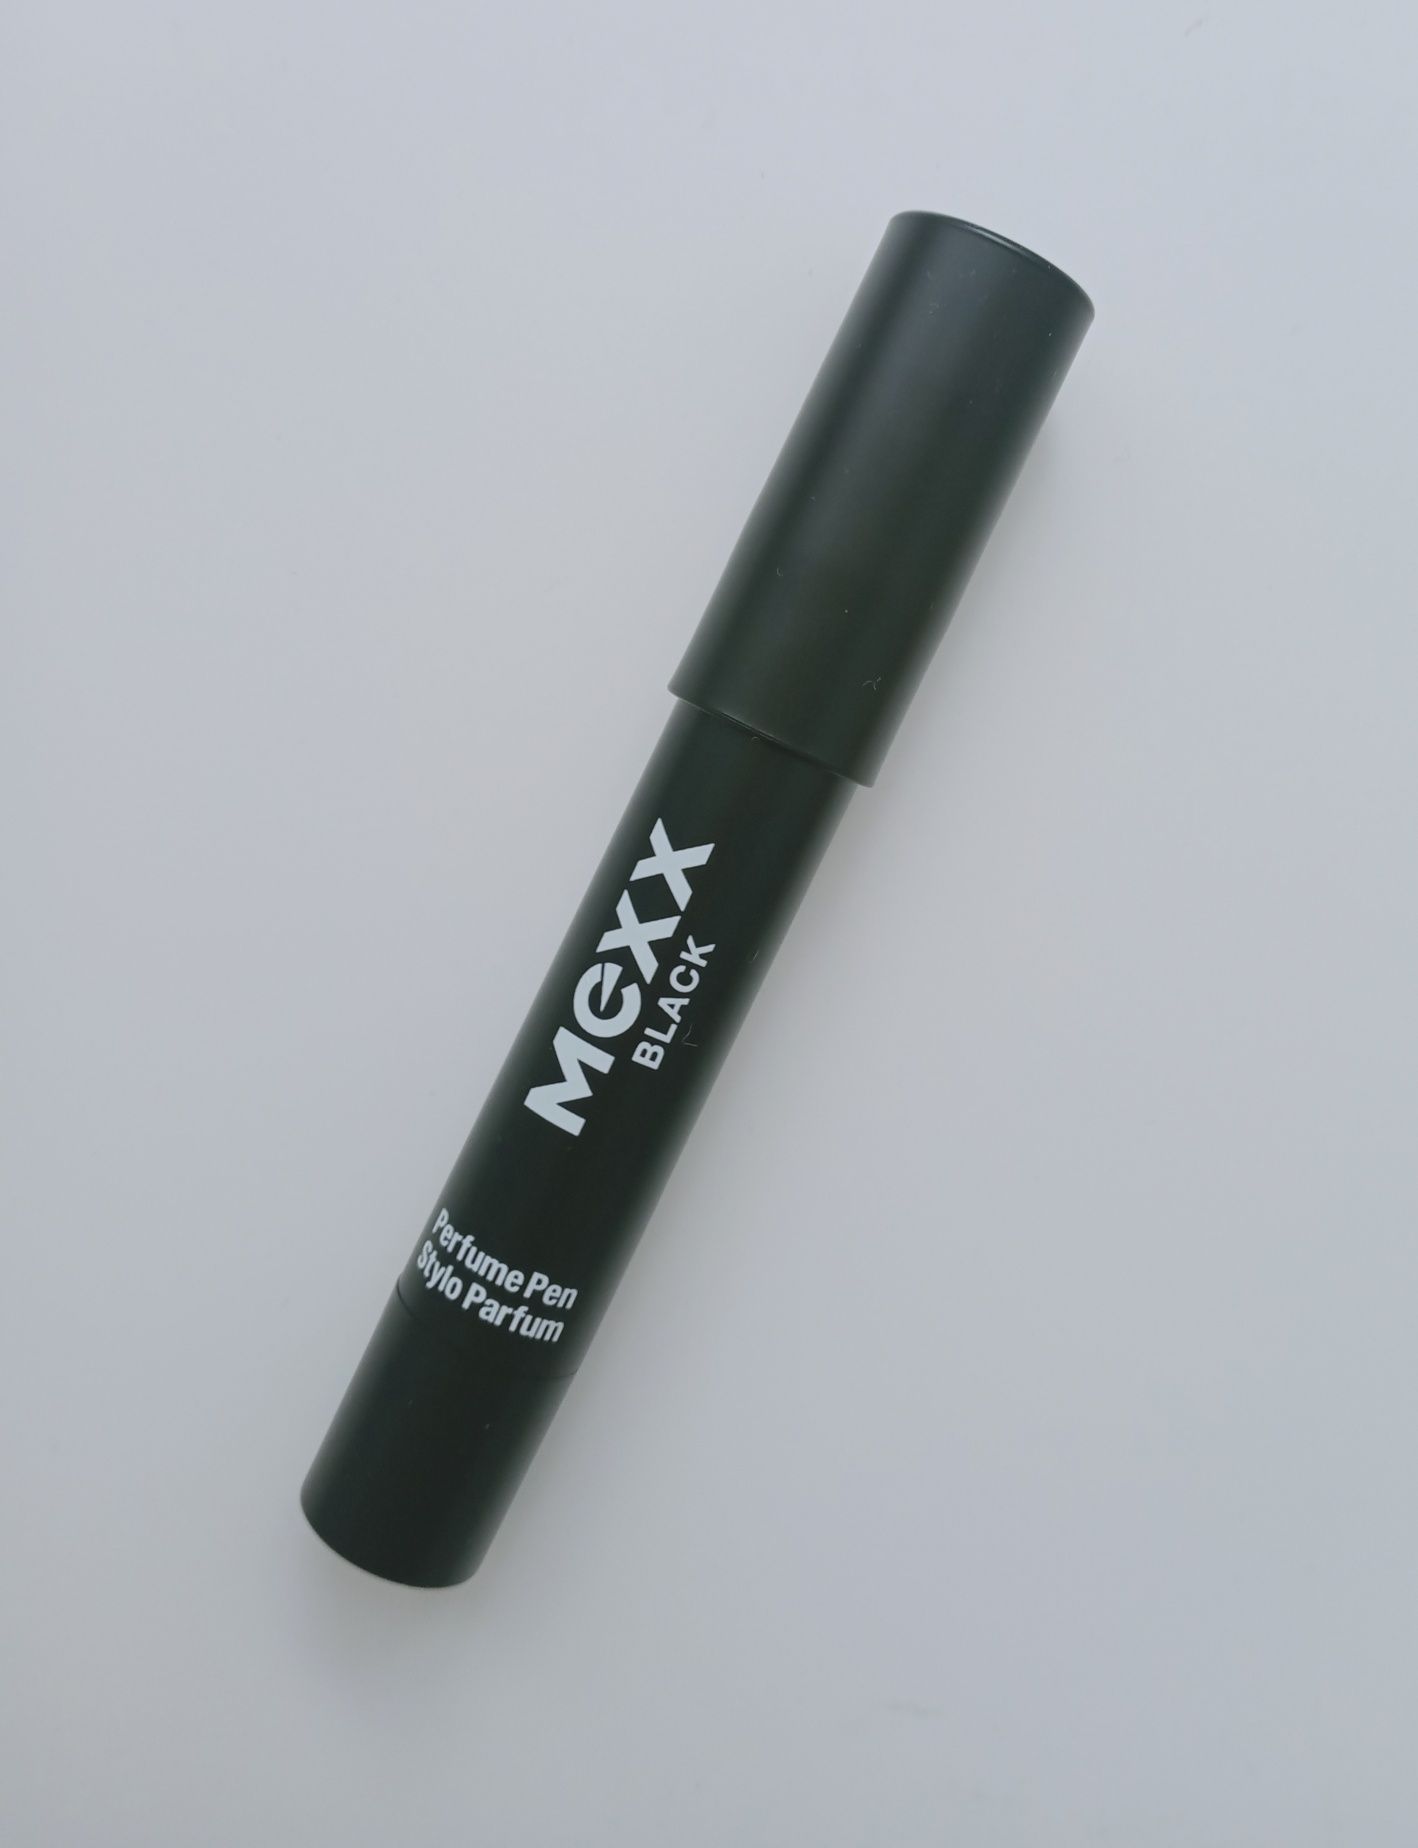 Mexx Black woda perfumowana 3 g
Perfume to Go to niezbędny element wyp